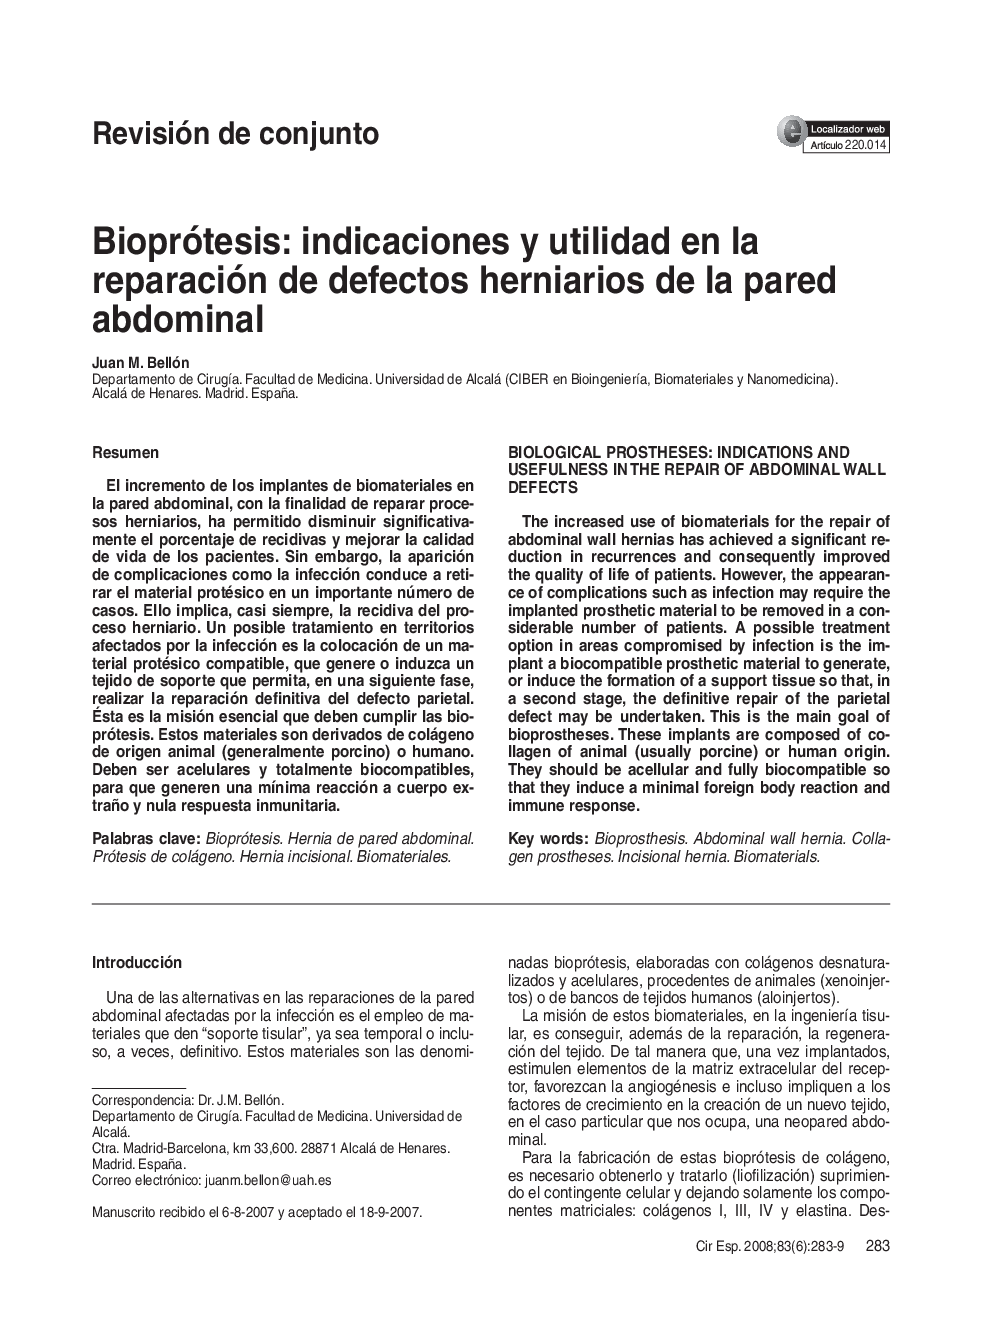 Bioprótesis: indicaciones y utilidad en la reparación de defectos herniarios de la pared abdominal